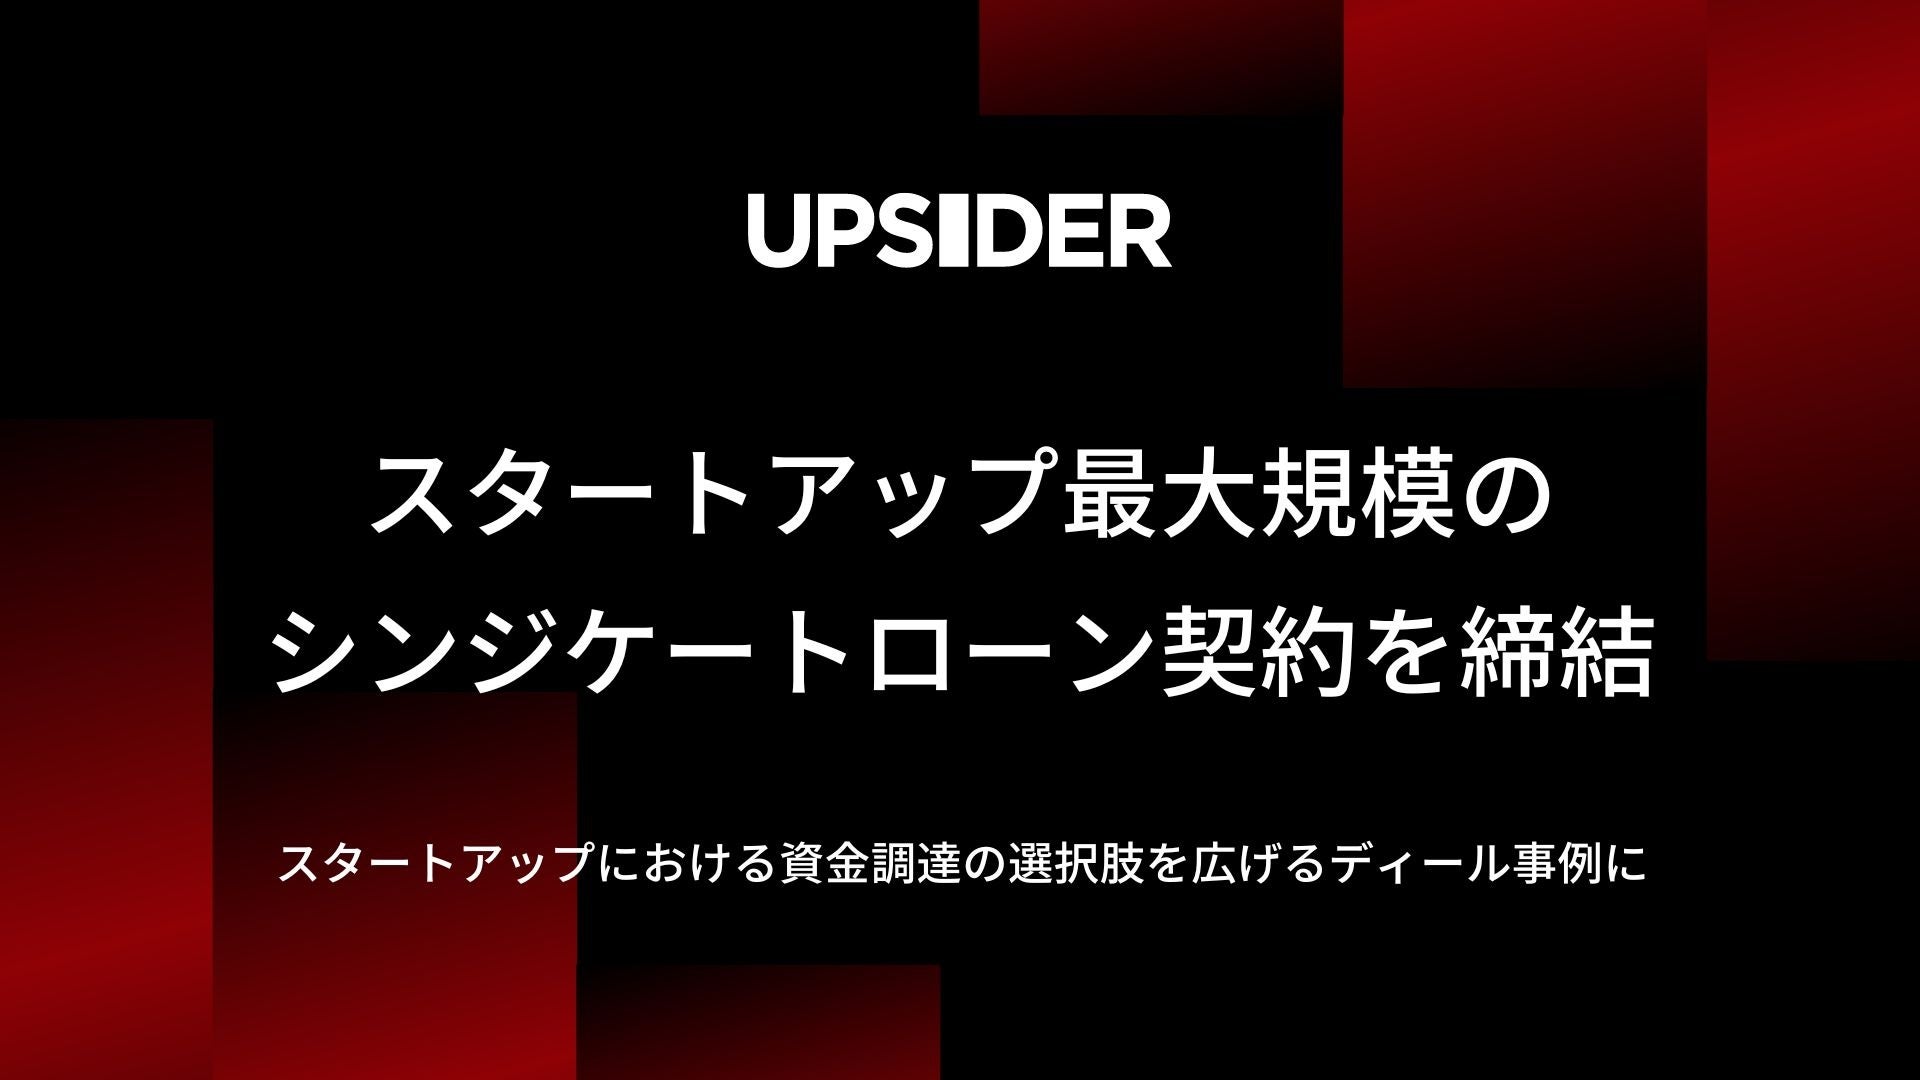 UPSIDER、スタートアップ最大規模*となる80億円超のシンジケートローン契約を締結